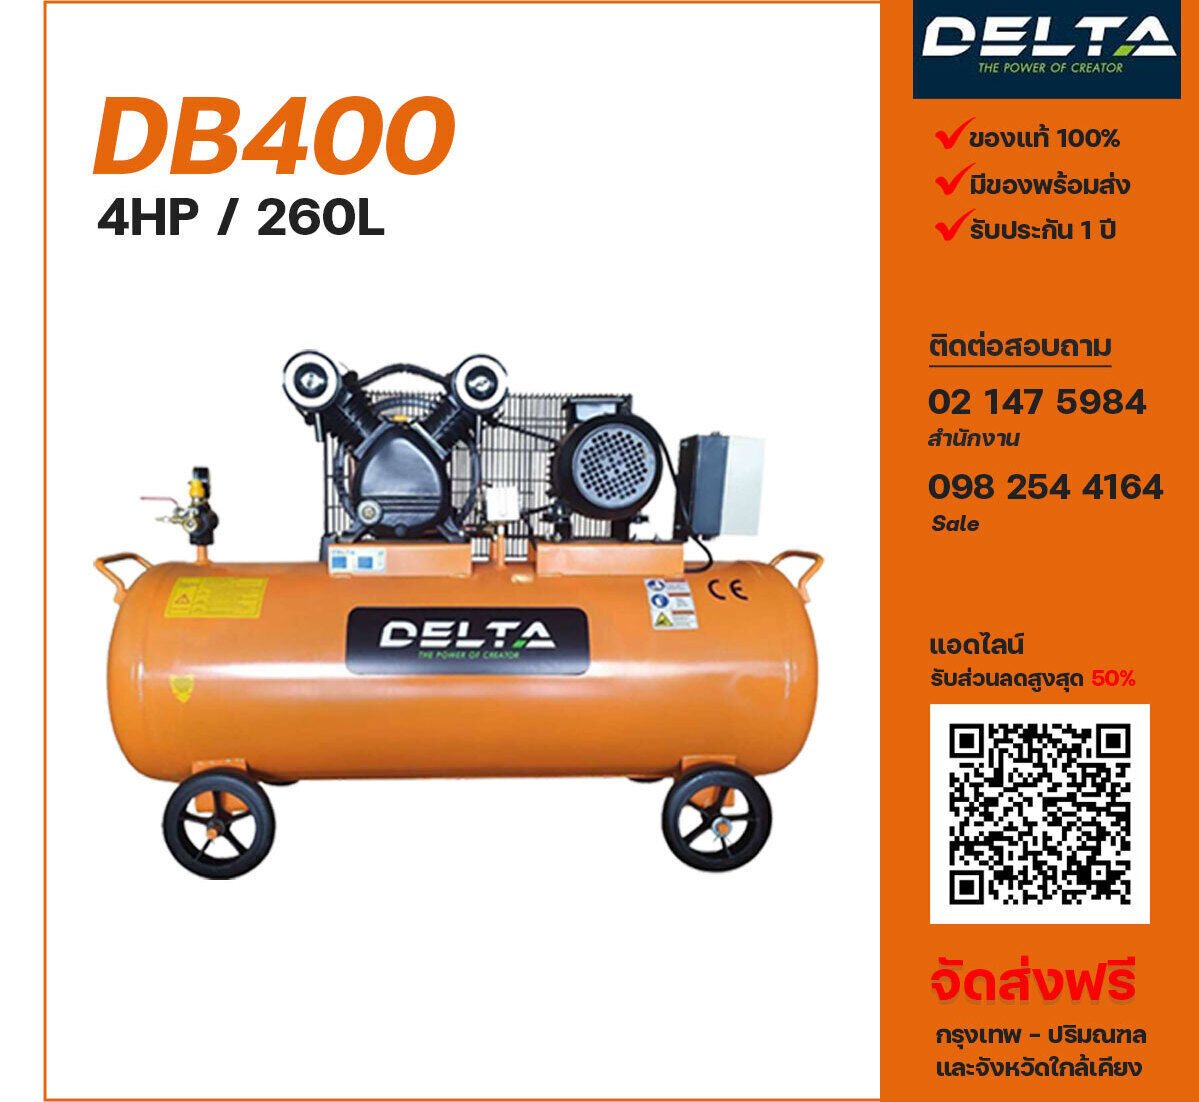 ปั๊มลมเดลต้า DB400 220V/380V ปั๊มลมลูกสูบ ขนาด 2 สูบ 4 แรงม้า 260 ลิตร DELTA พร้อมมอเตอร์ ไฟ 220V/380V ส่งฟรี กรุงเทพฯ-ปริมณฑล รับประกัน 1 ปี